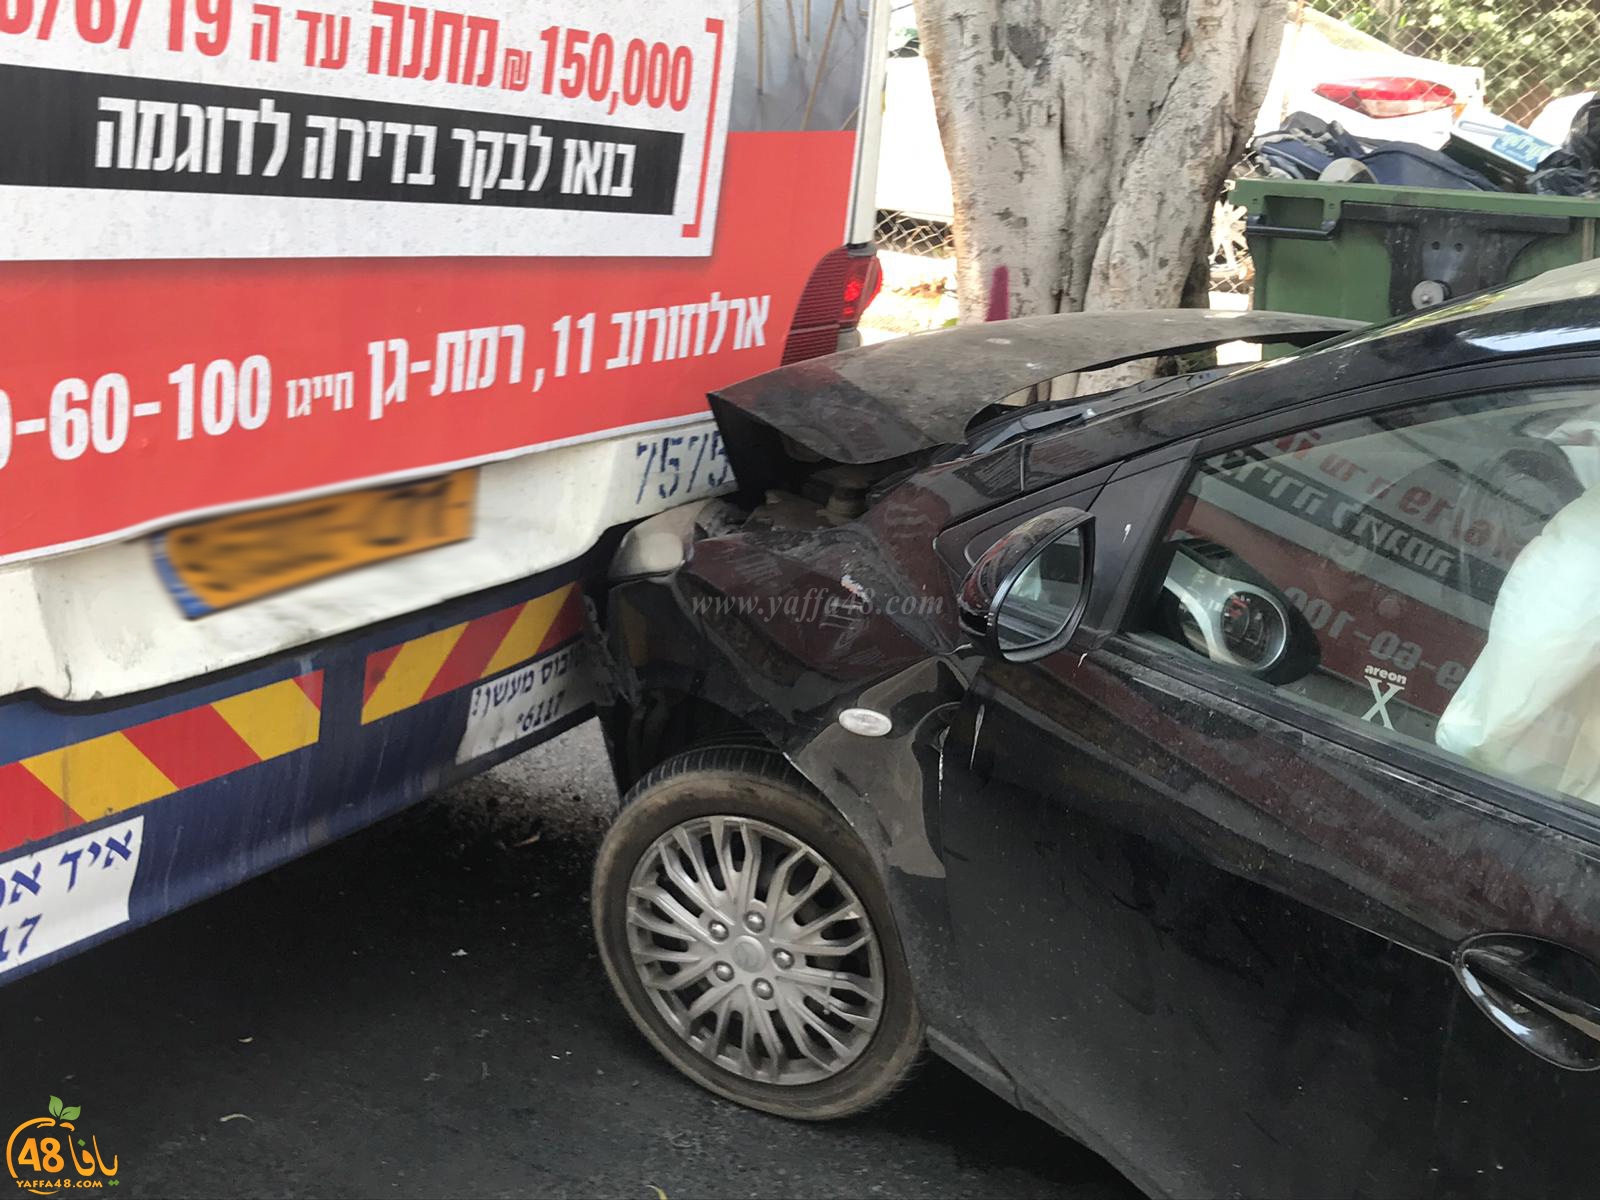  بالصور: أضرار مادية اثر حادث طرق بين مركبة وحافلة في مدينة يافا 